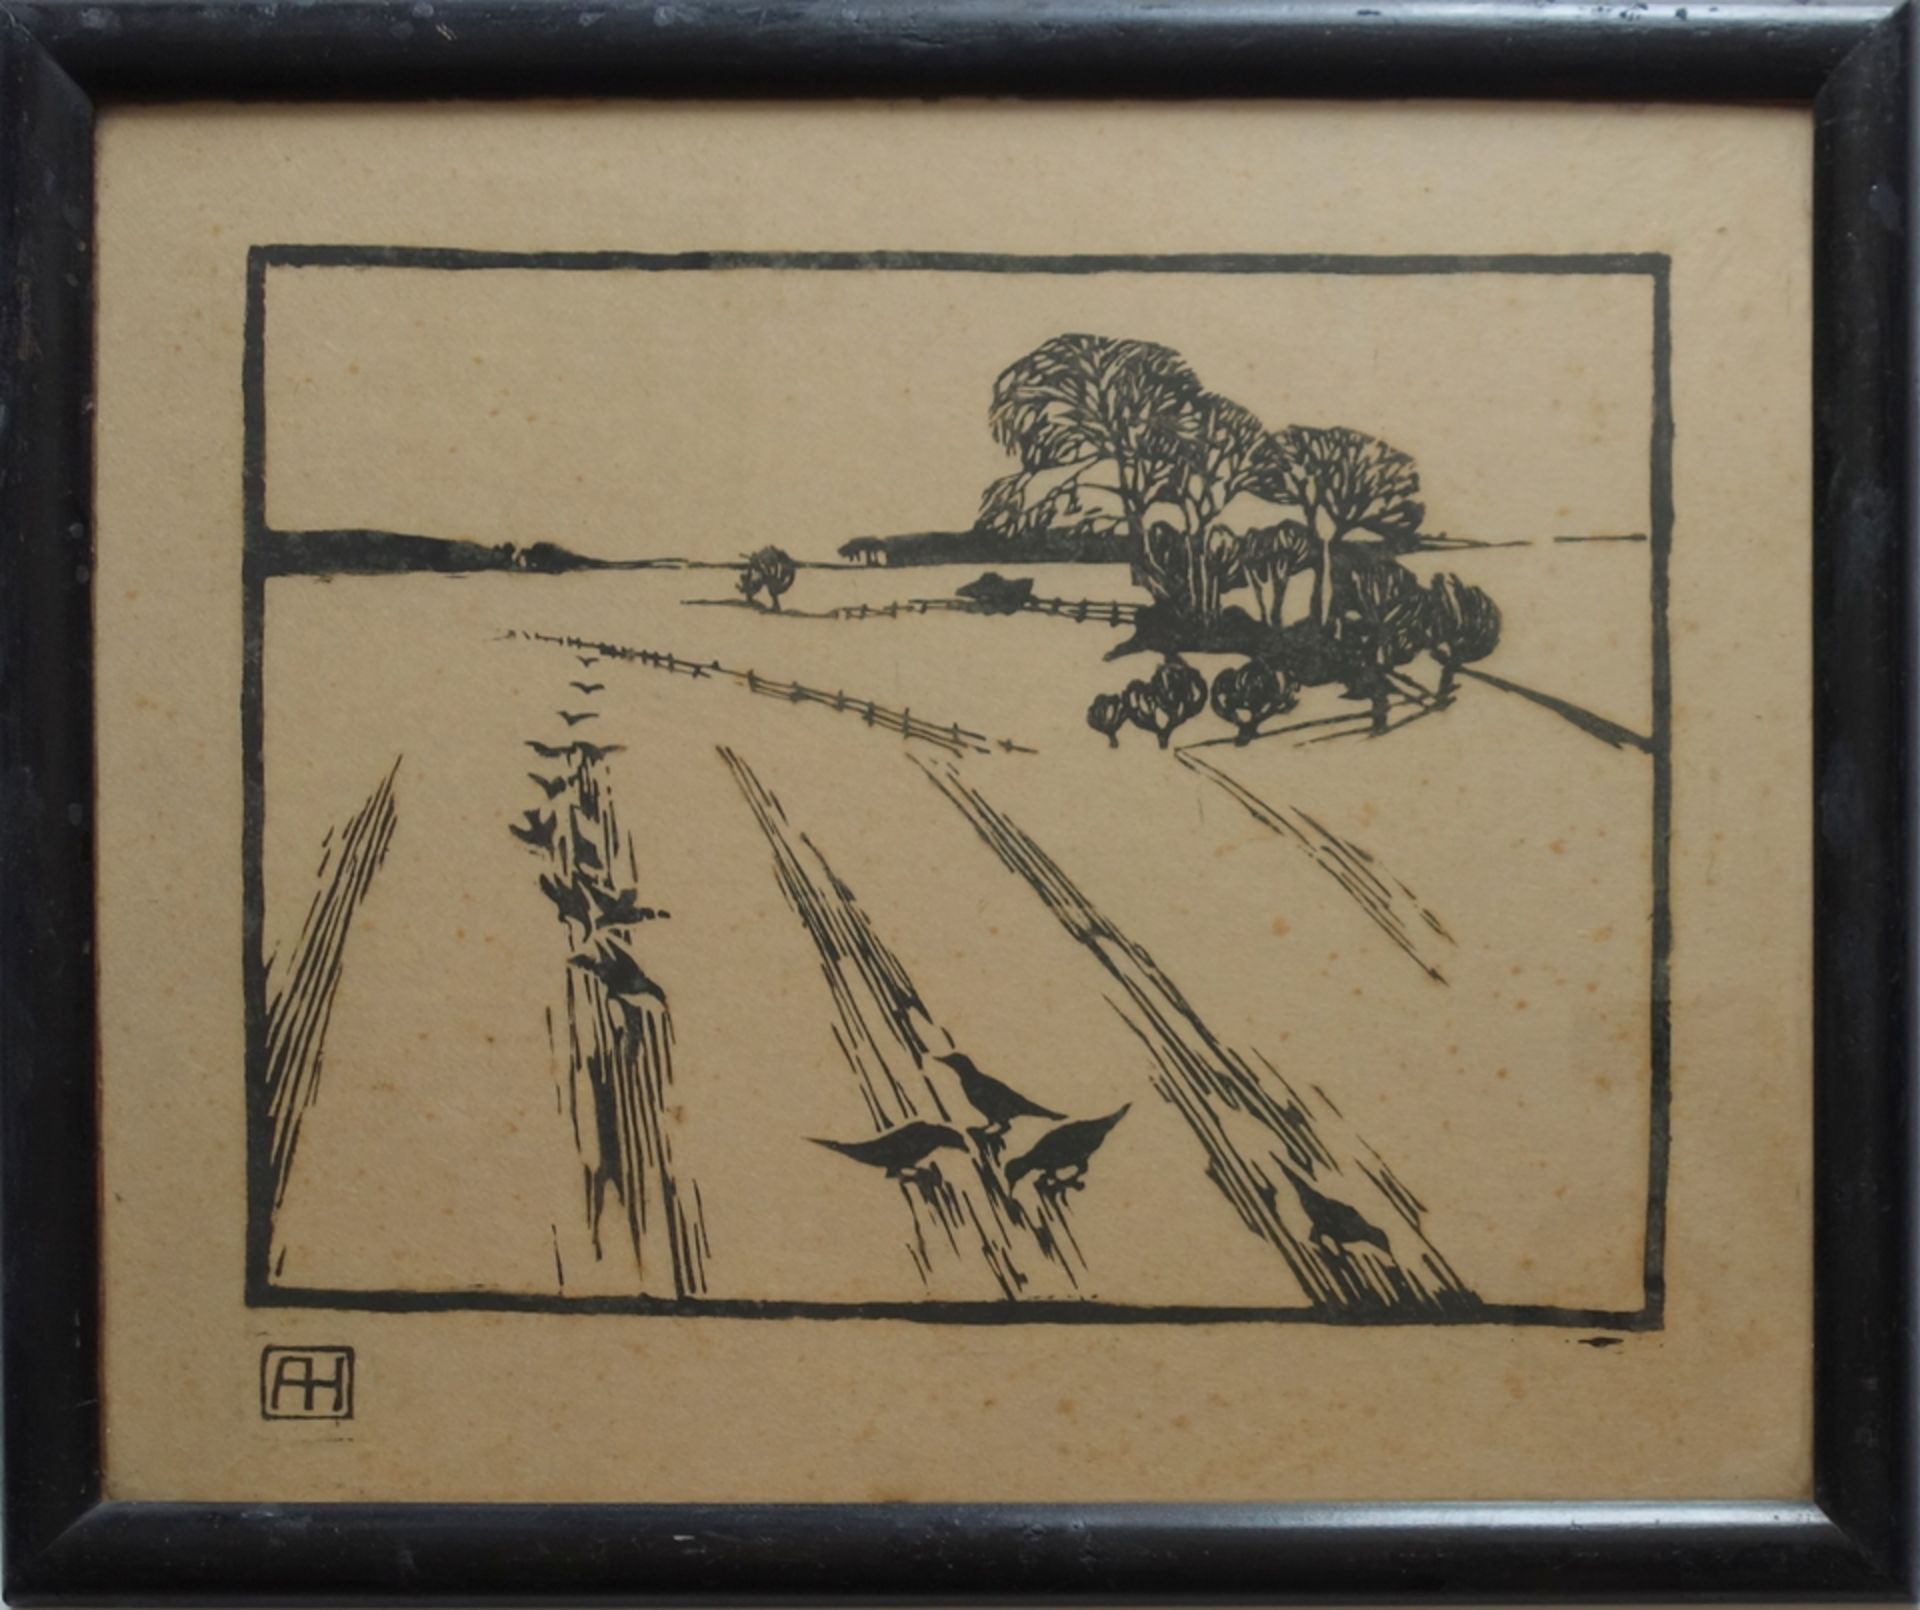 August Heitmüller (1873, Gümmer - 1935, near Meran/IT), "Crows in the Field", early 20th century, l